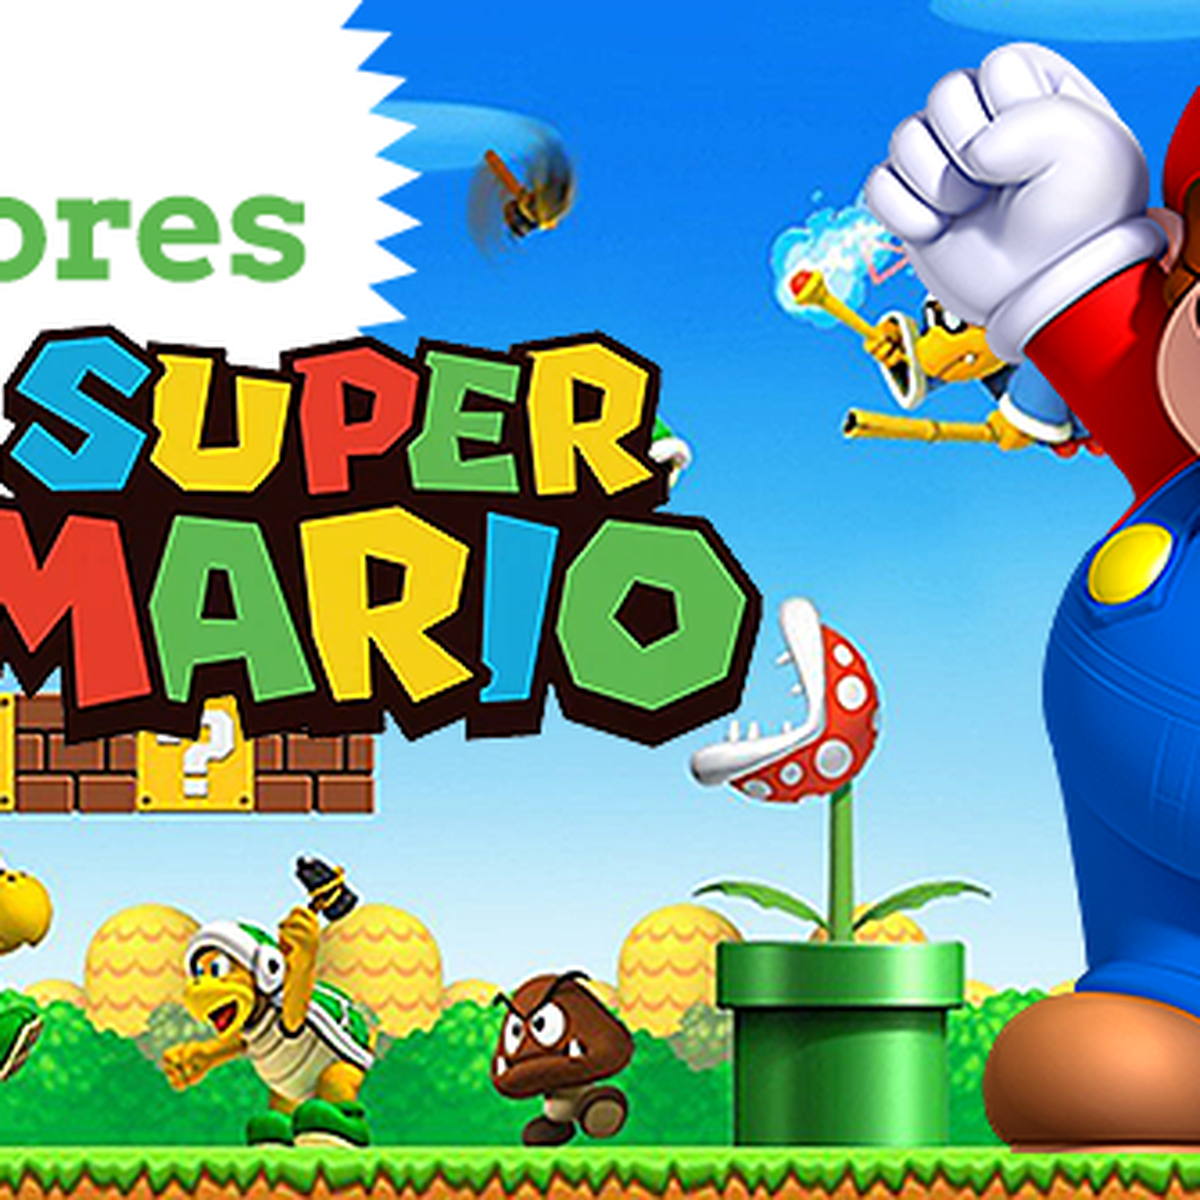 Los mejores momentos de Super Mario Bros